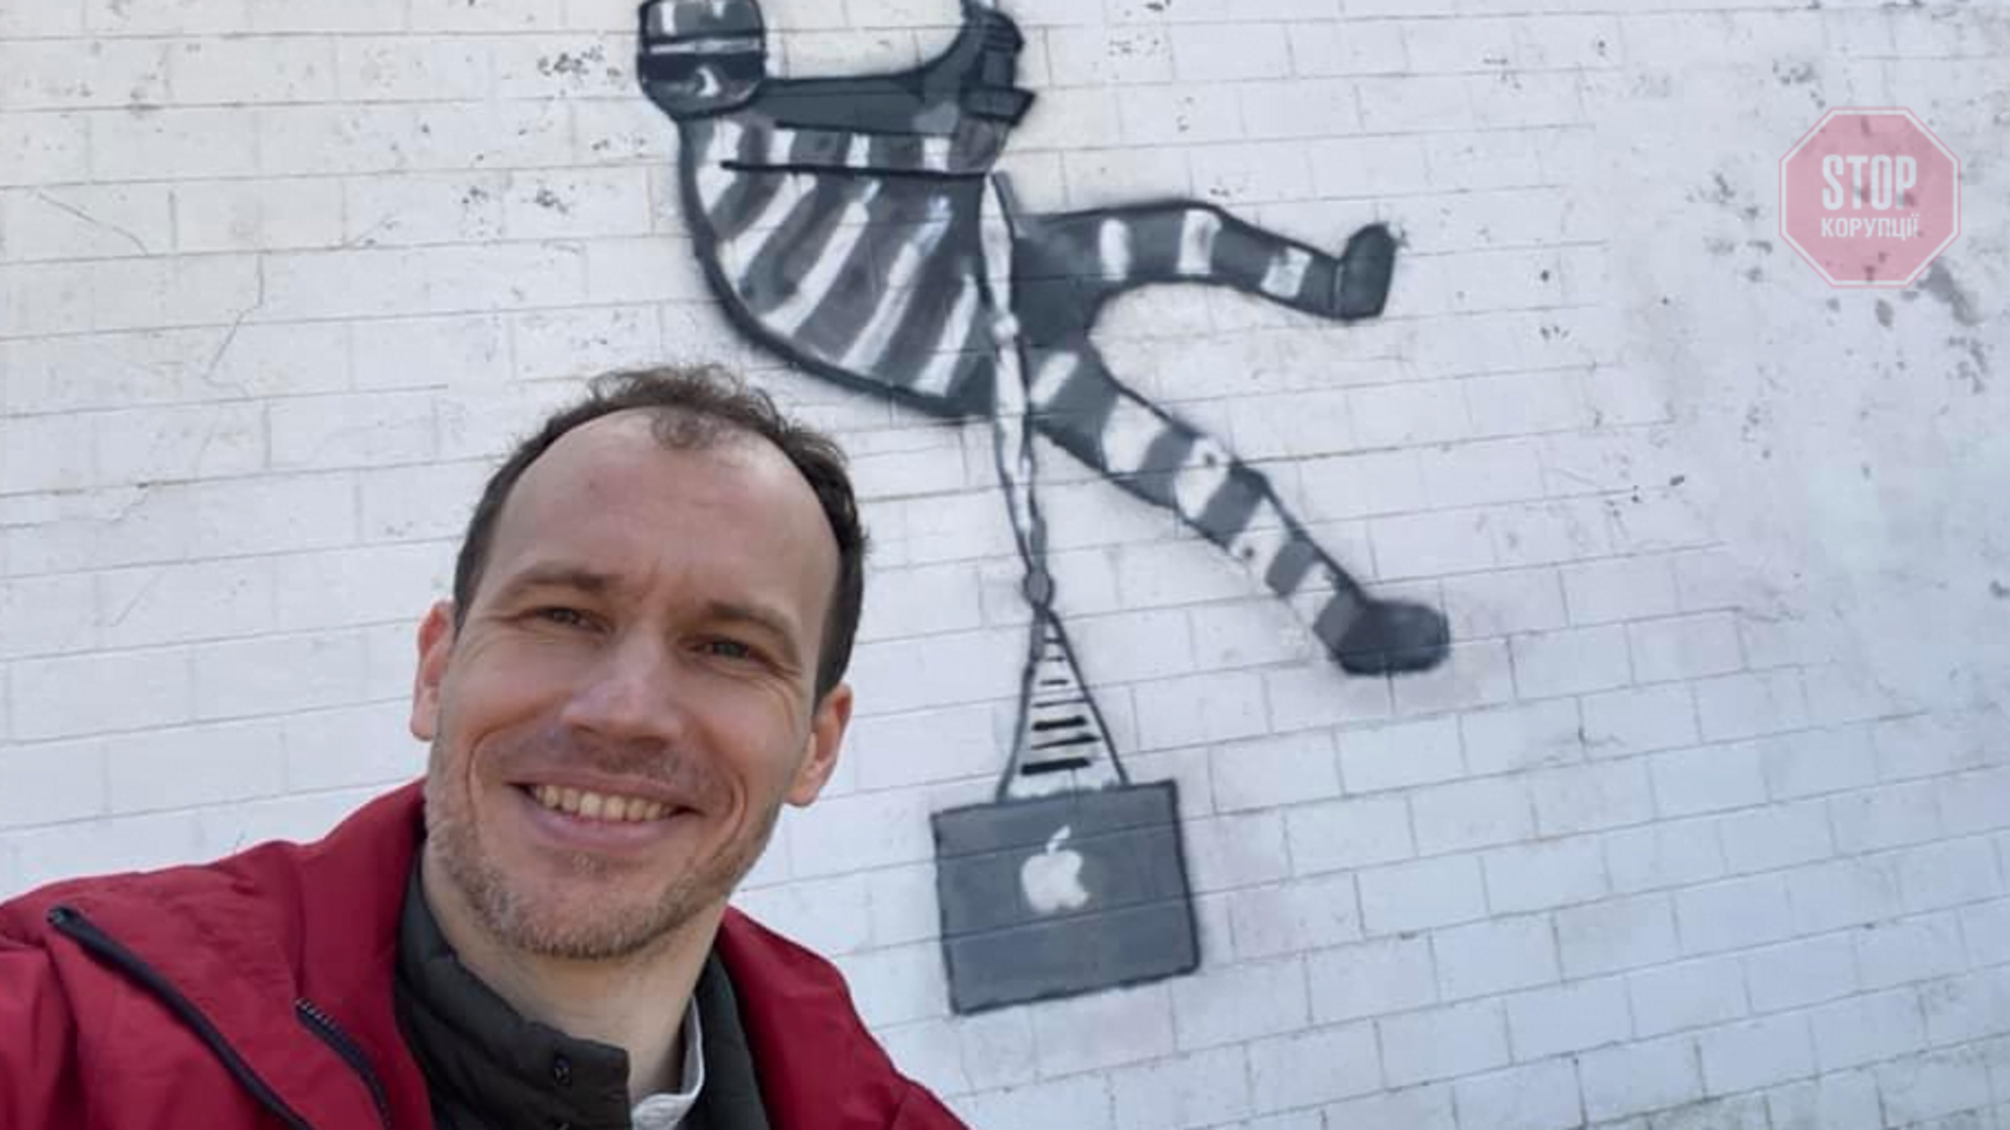 Задля успішного продажу: міністр юстиції Малюська повторив графіті Бенксі на стіні в'язниці